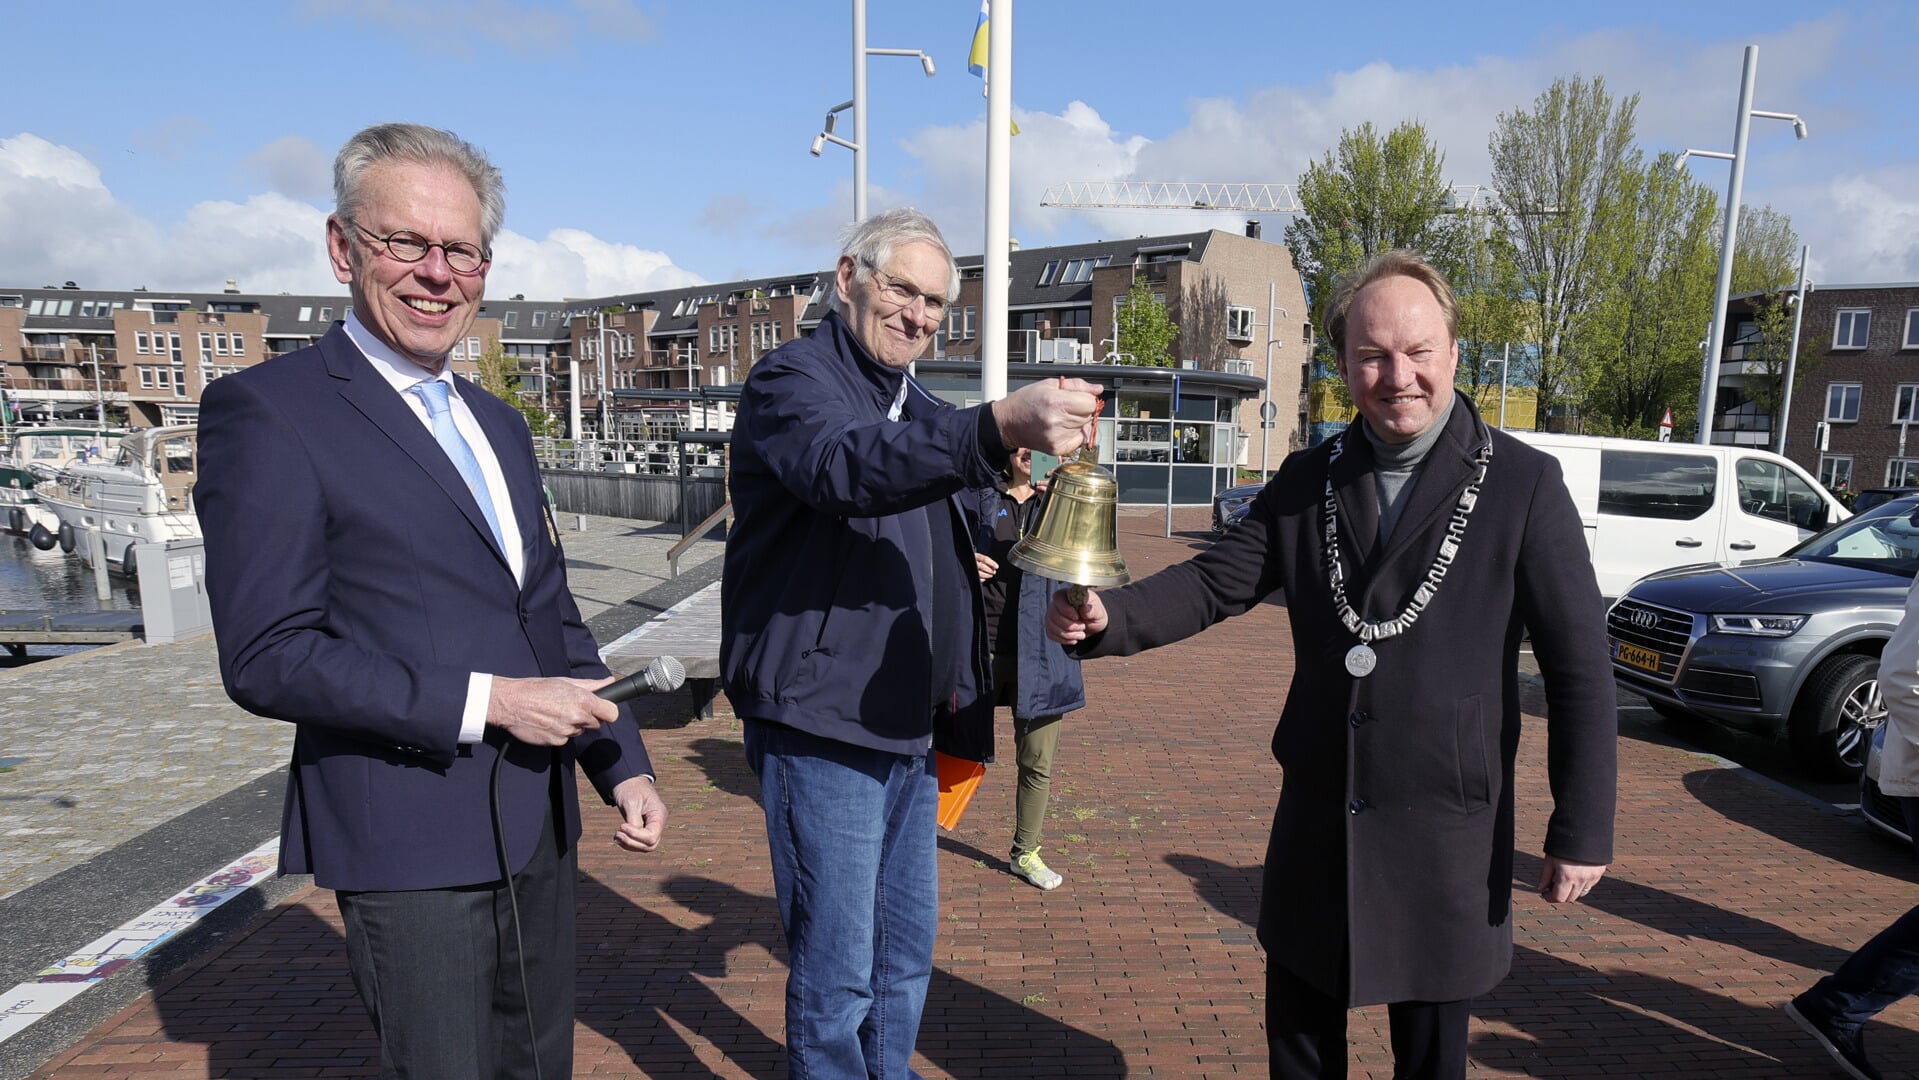 Burgemeester Van der Loo luidde de bel voor het nieuwe vaarseizoen (Foto: Fred Rotgans)